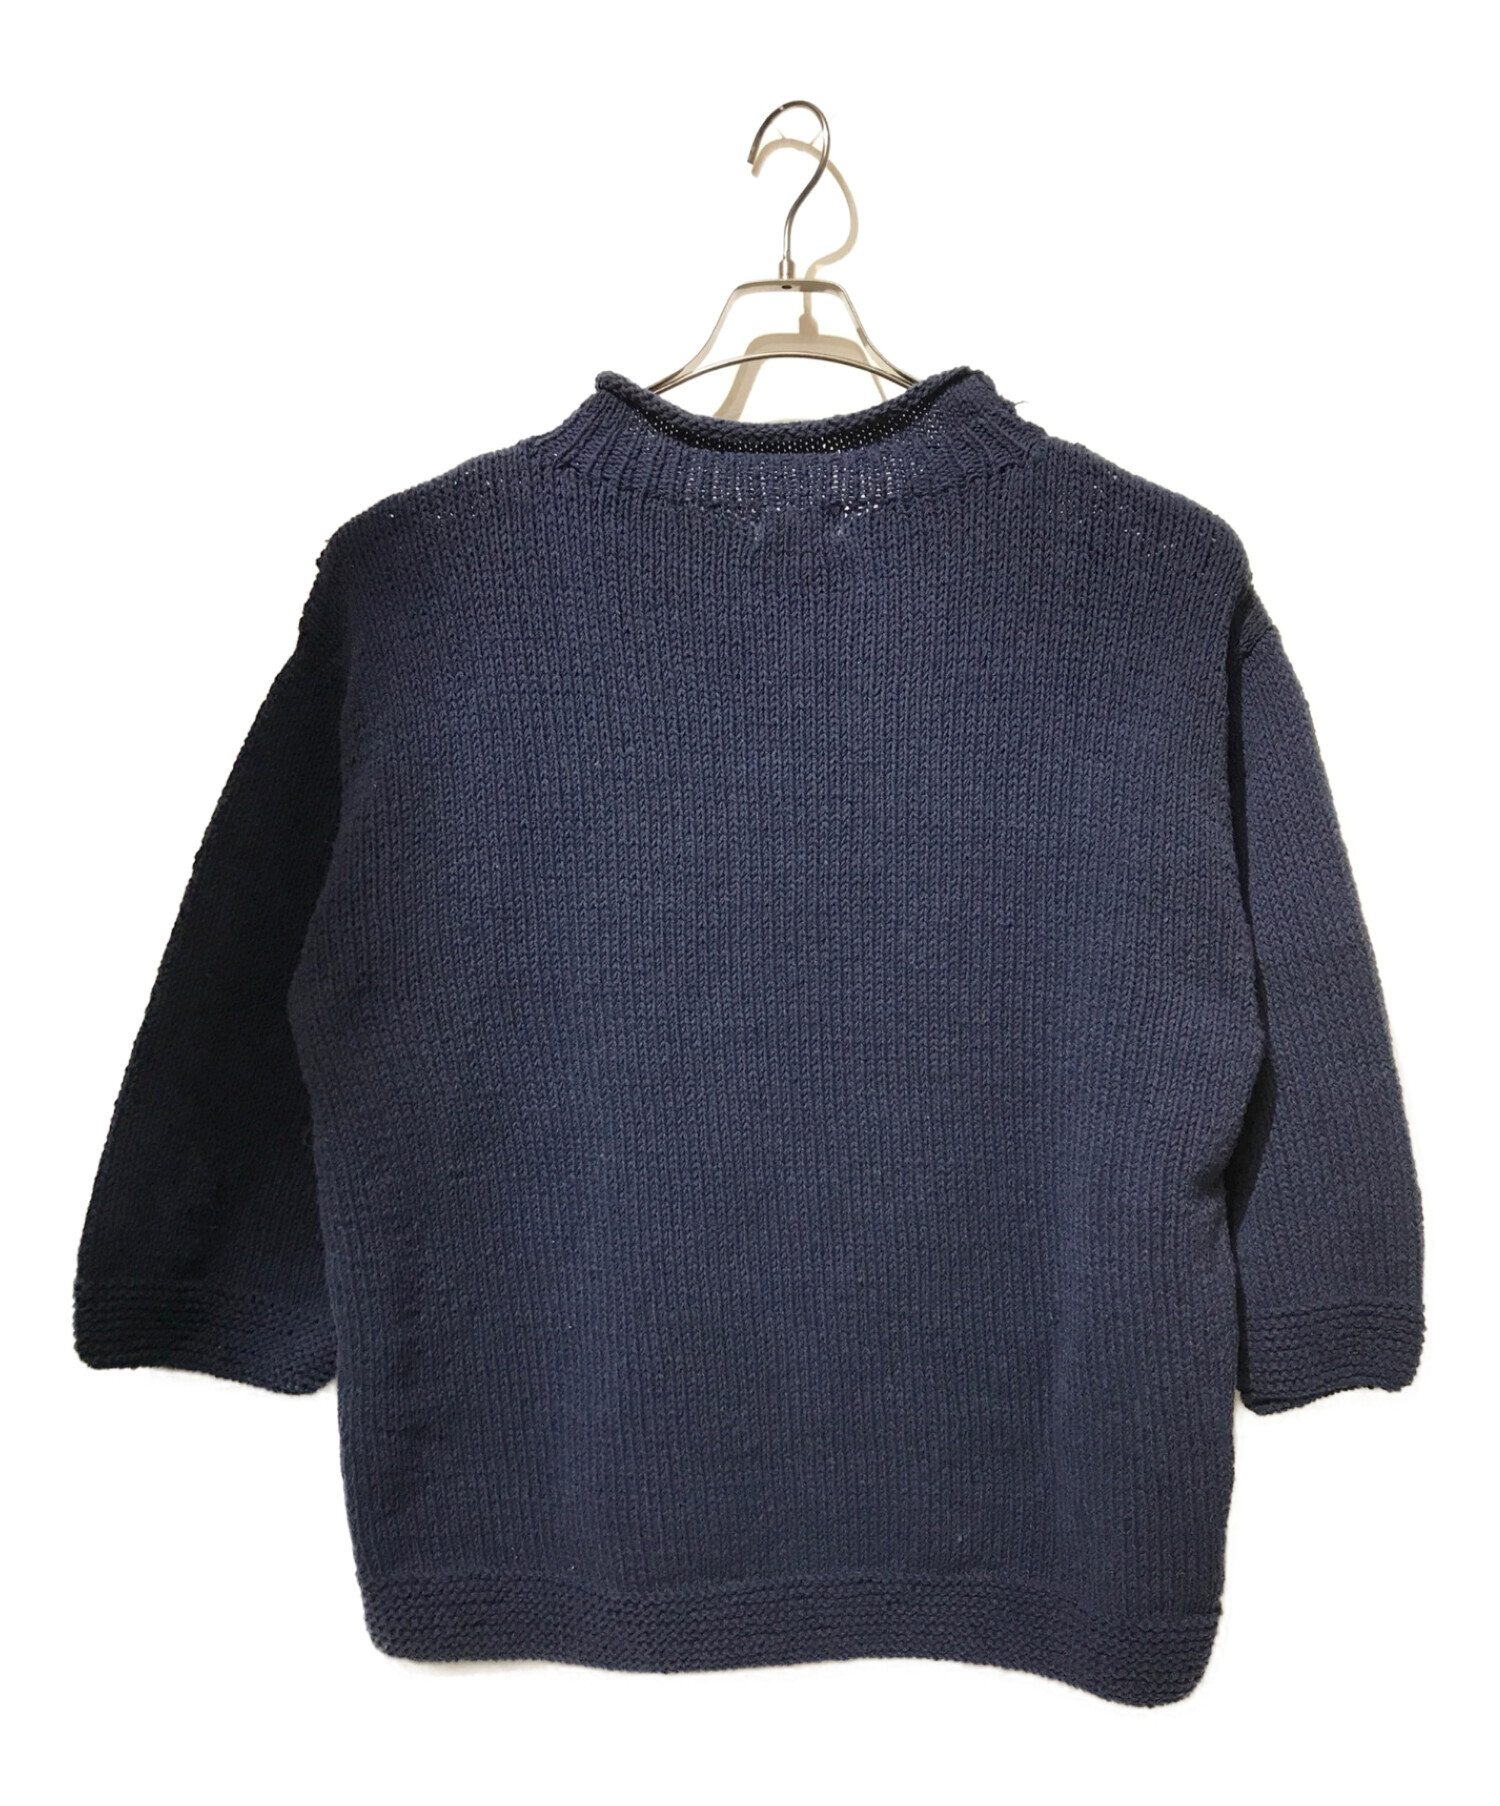 試着のみ MacMahon Knitting Mills cotton knit-